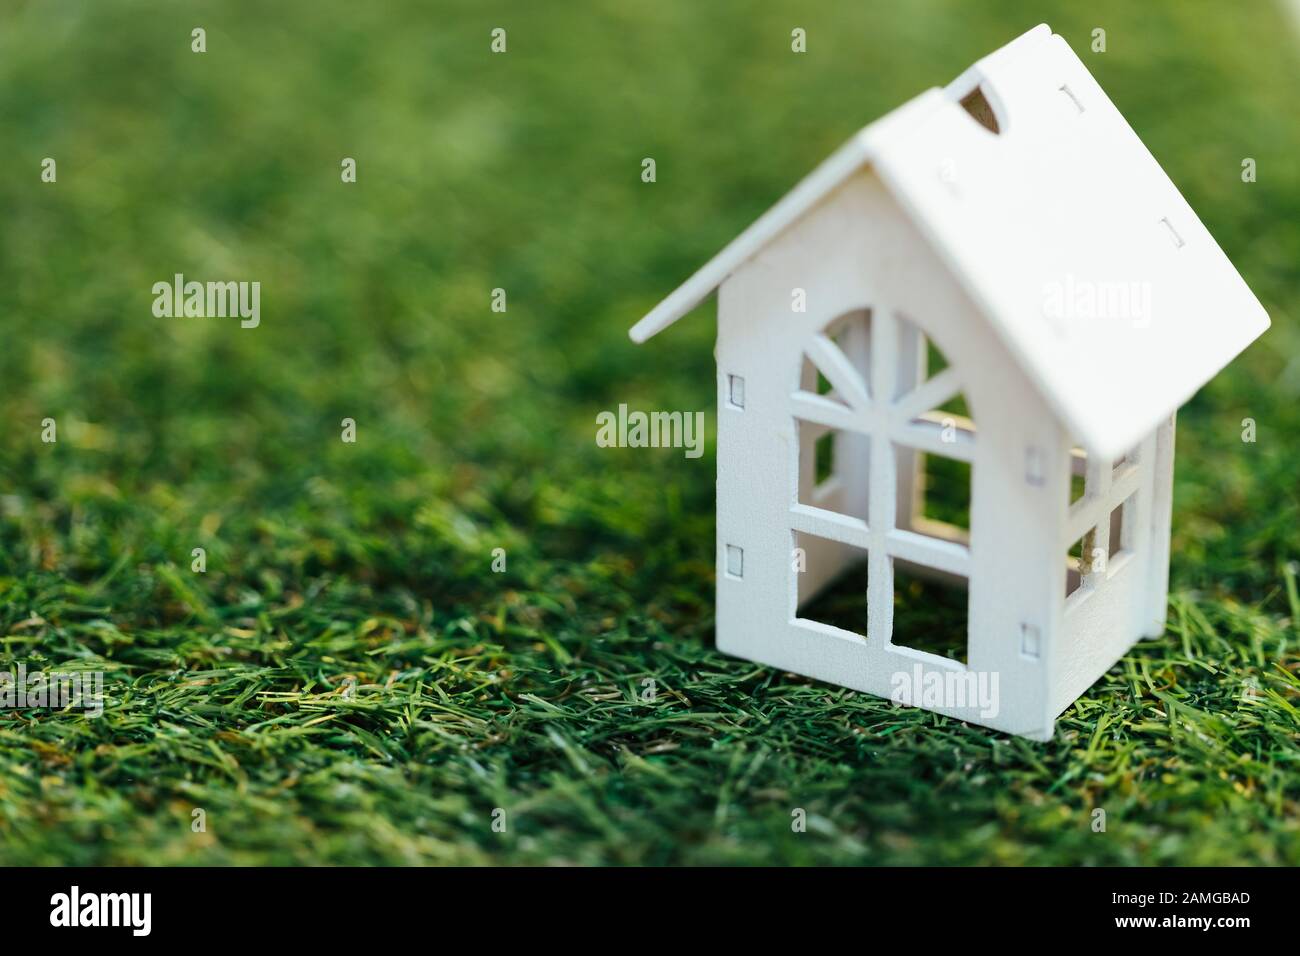 Casa blanca de madera en miniatura sobre hierba verde. Inversión inmobiliaria y concepto inmobiliario financiero hipotecario. Foto de stock